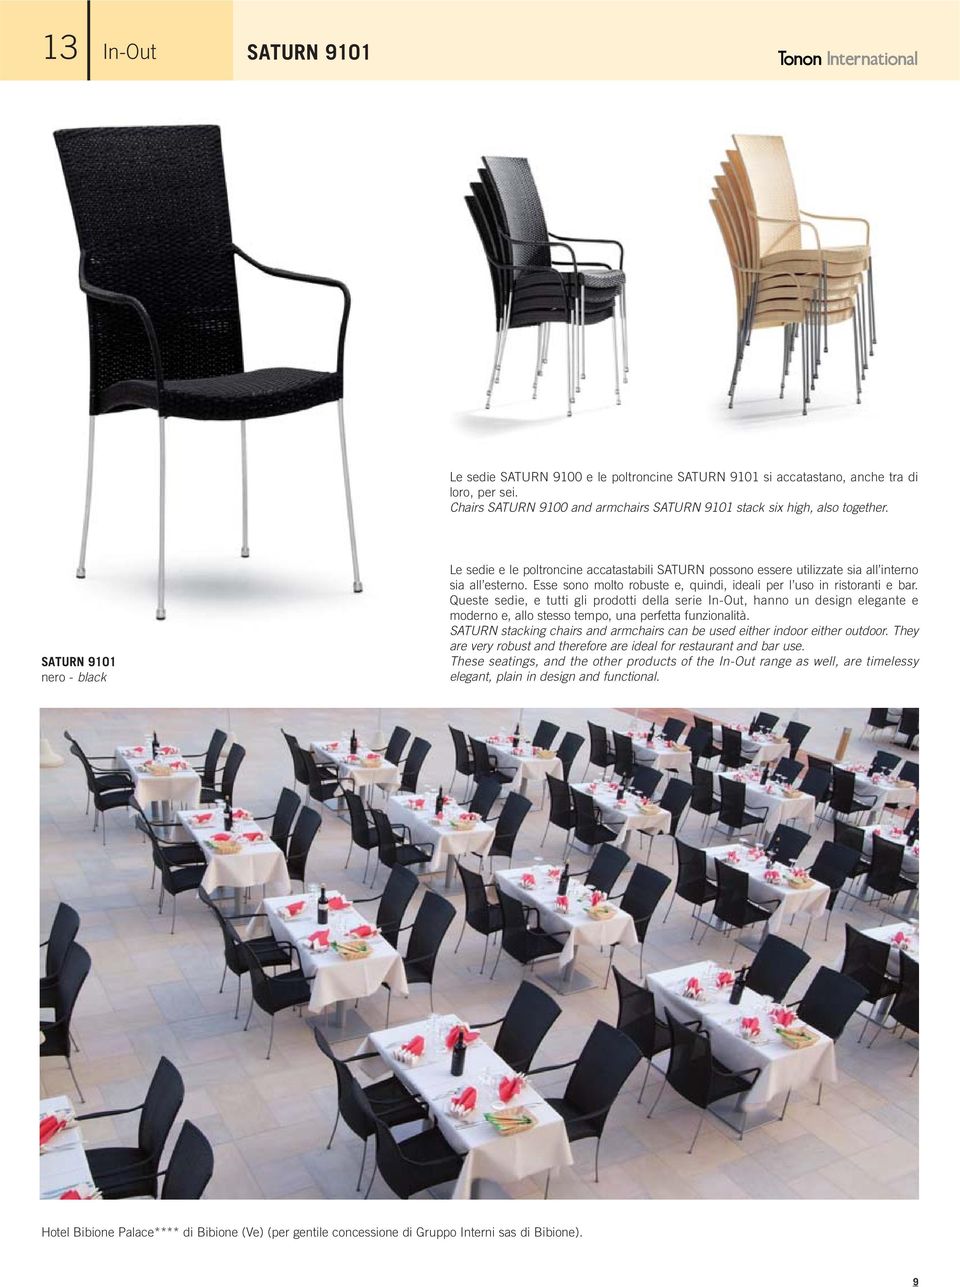 Queste sedie, e tutti gli prodotti della serie In-Out, hanno un design elegante e moderno e, allo stesso tempo, una perfetta funzionalità.